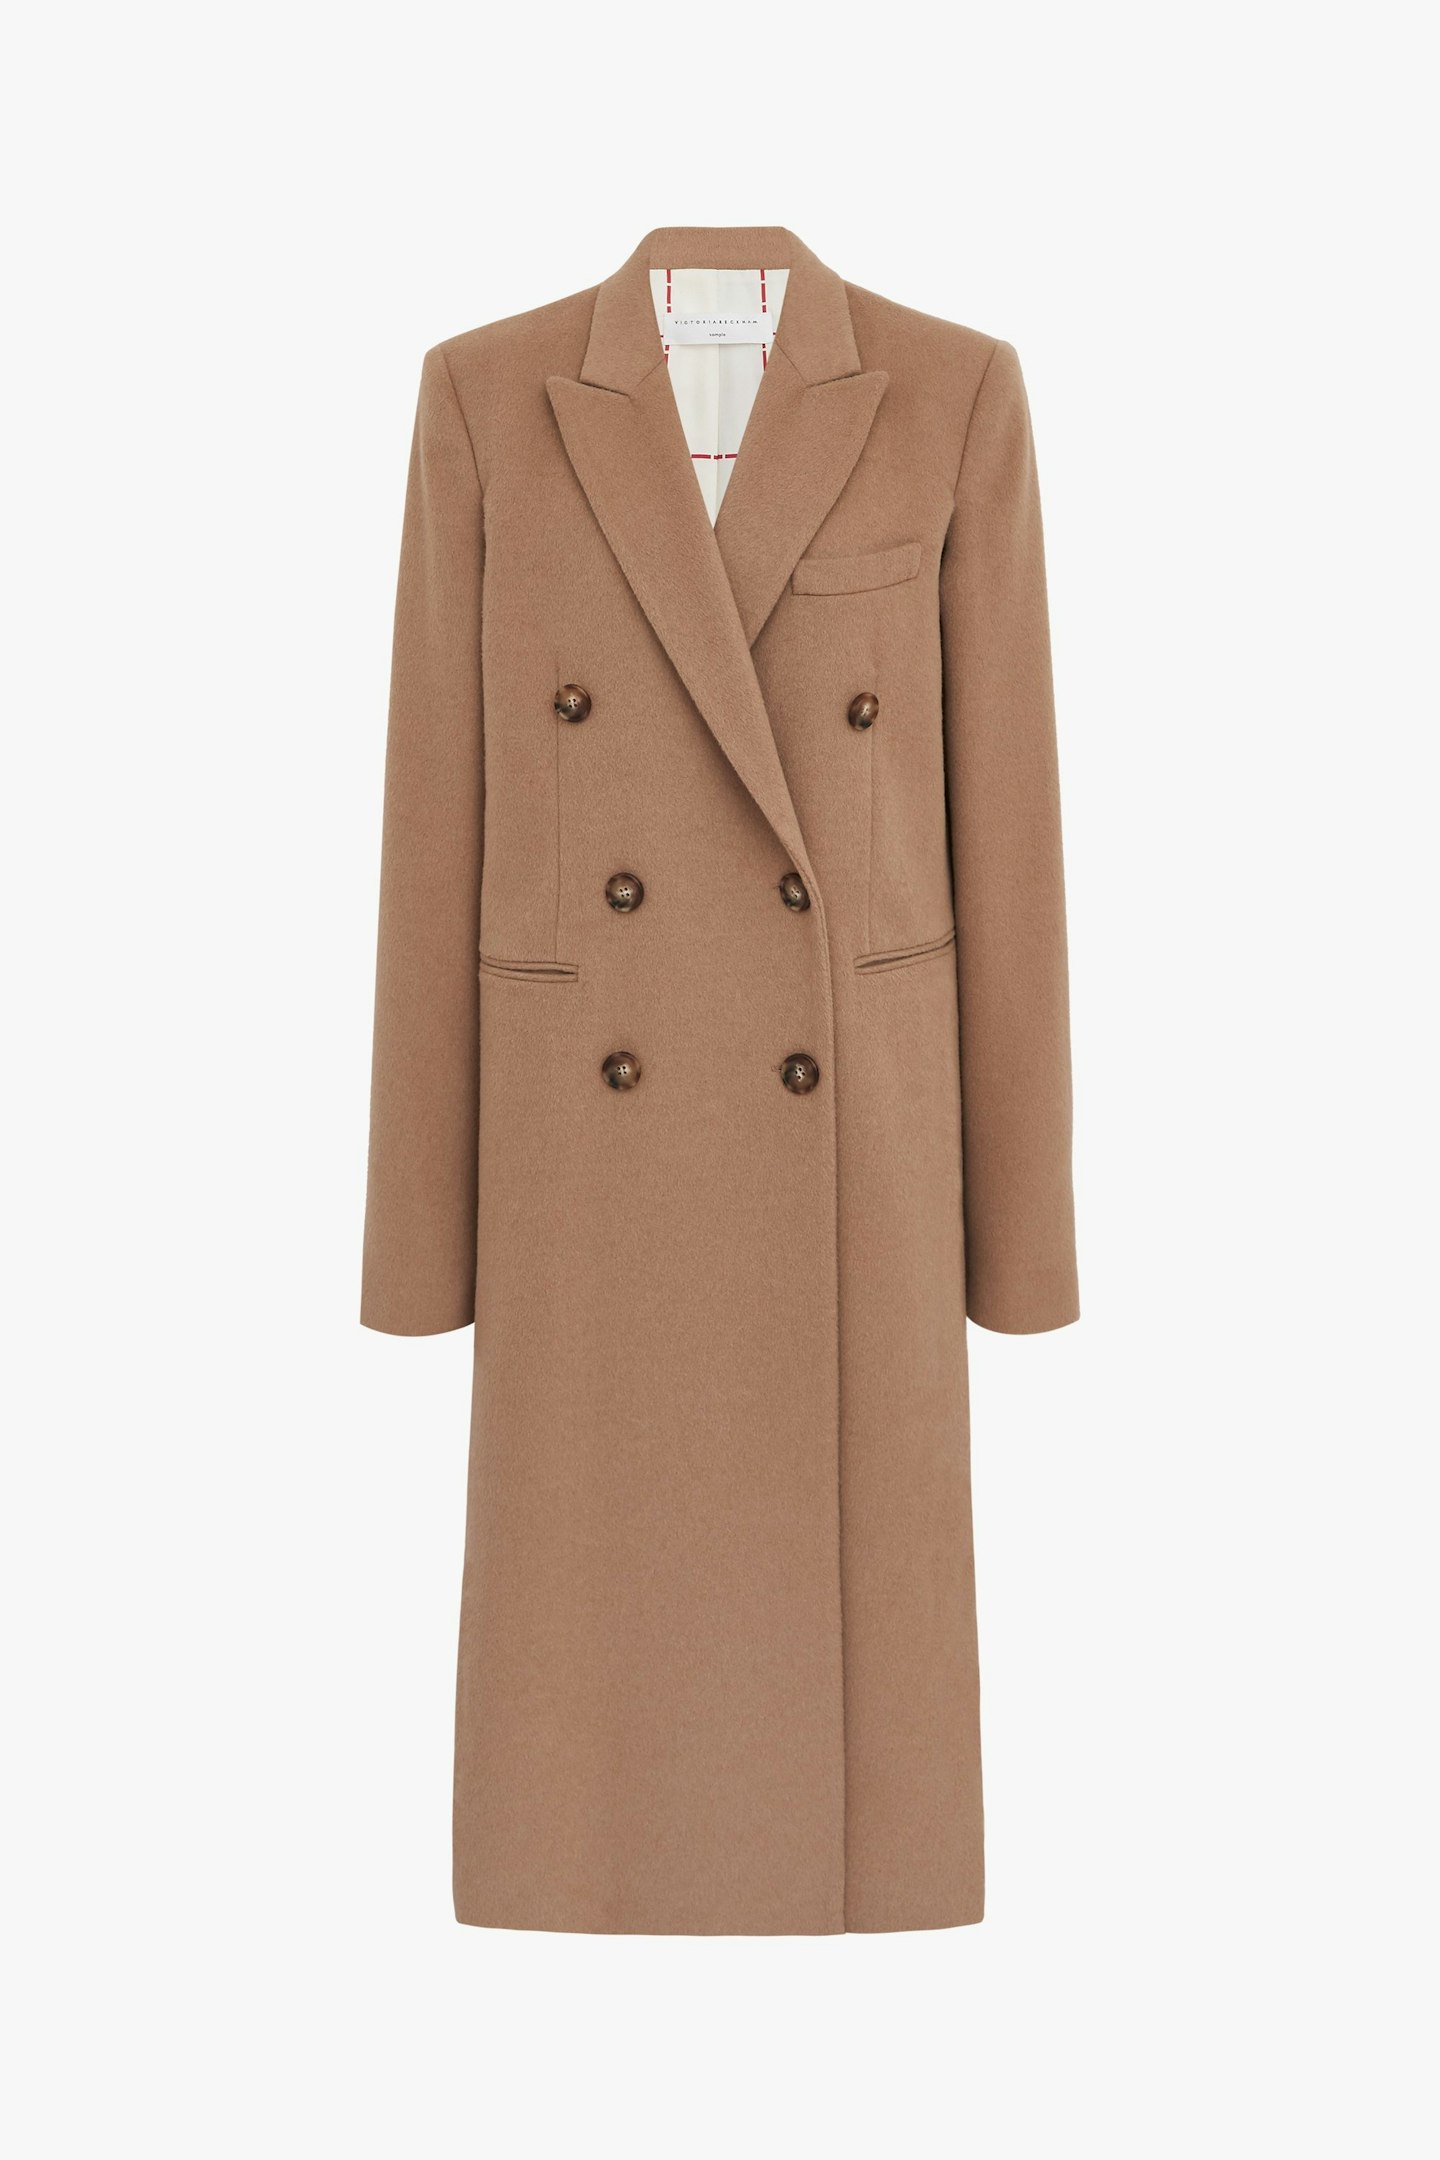 Victoria Beckham, Men's Coat In Camel, £2,250